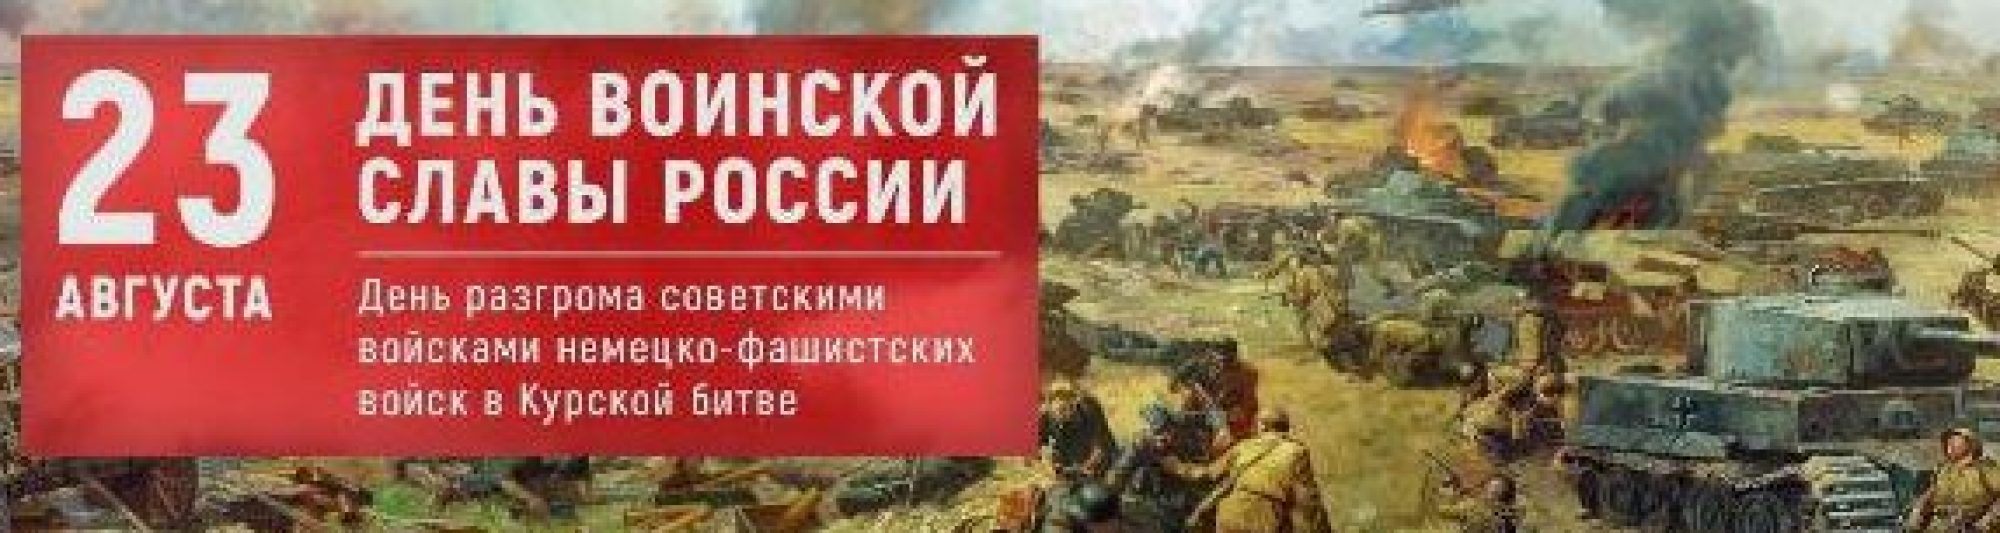 Поздравление с Днем воинской славы России 